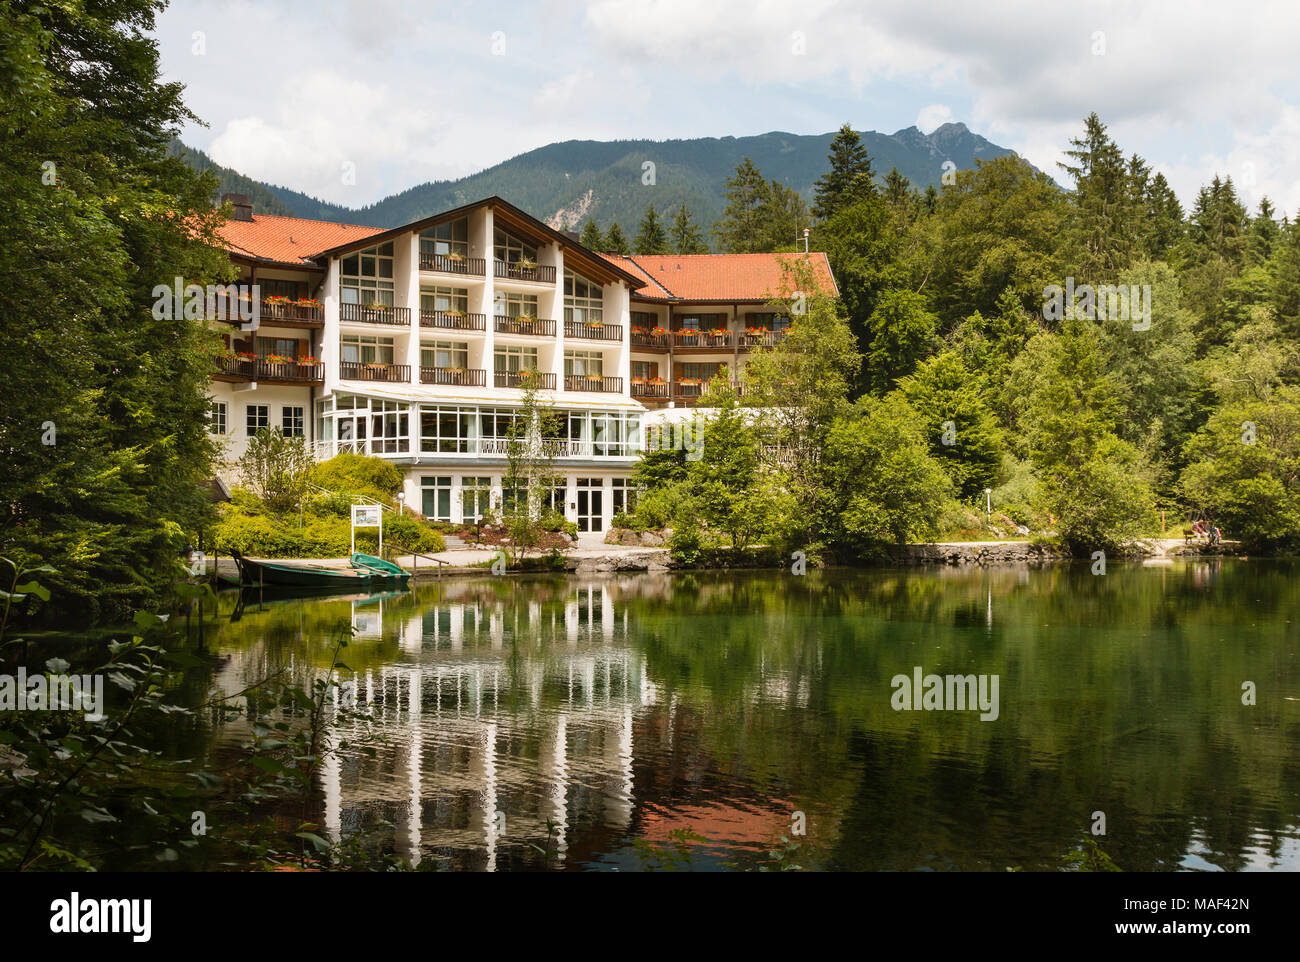 A large hotel at lake Badersee in Grainau, Germany. Stock Photo